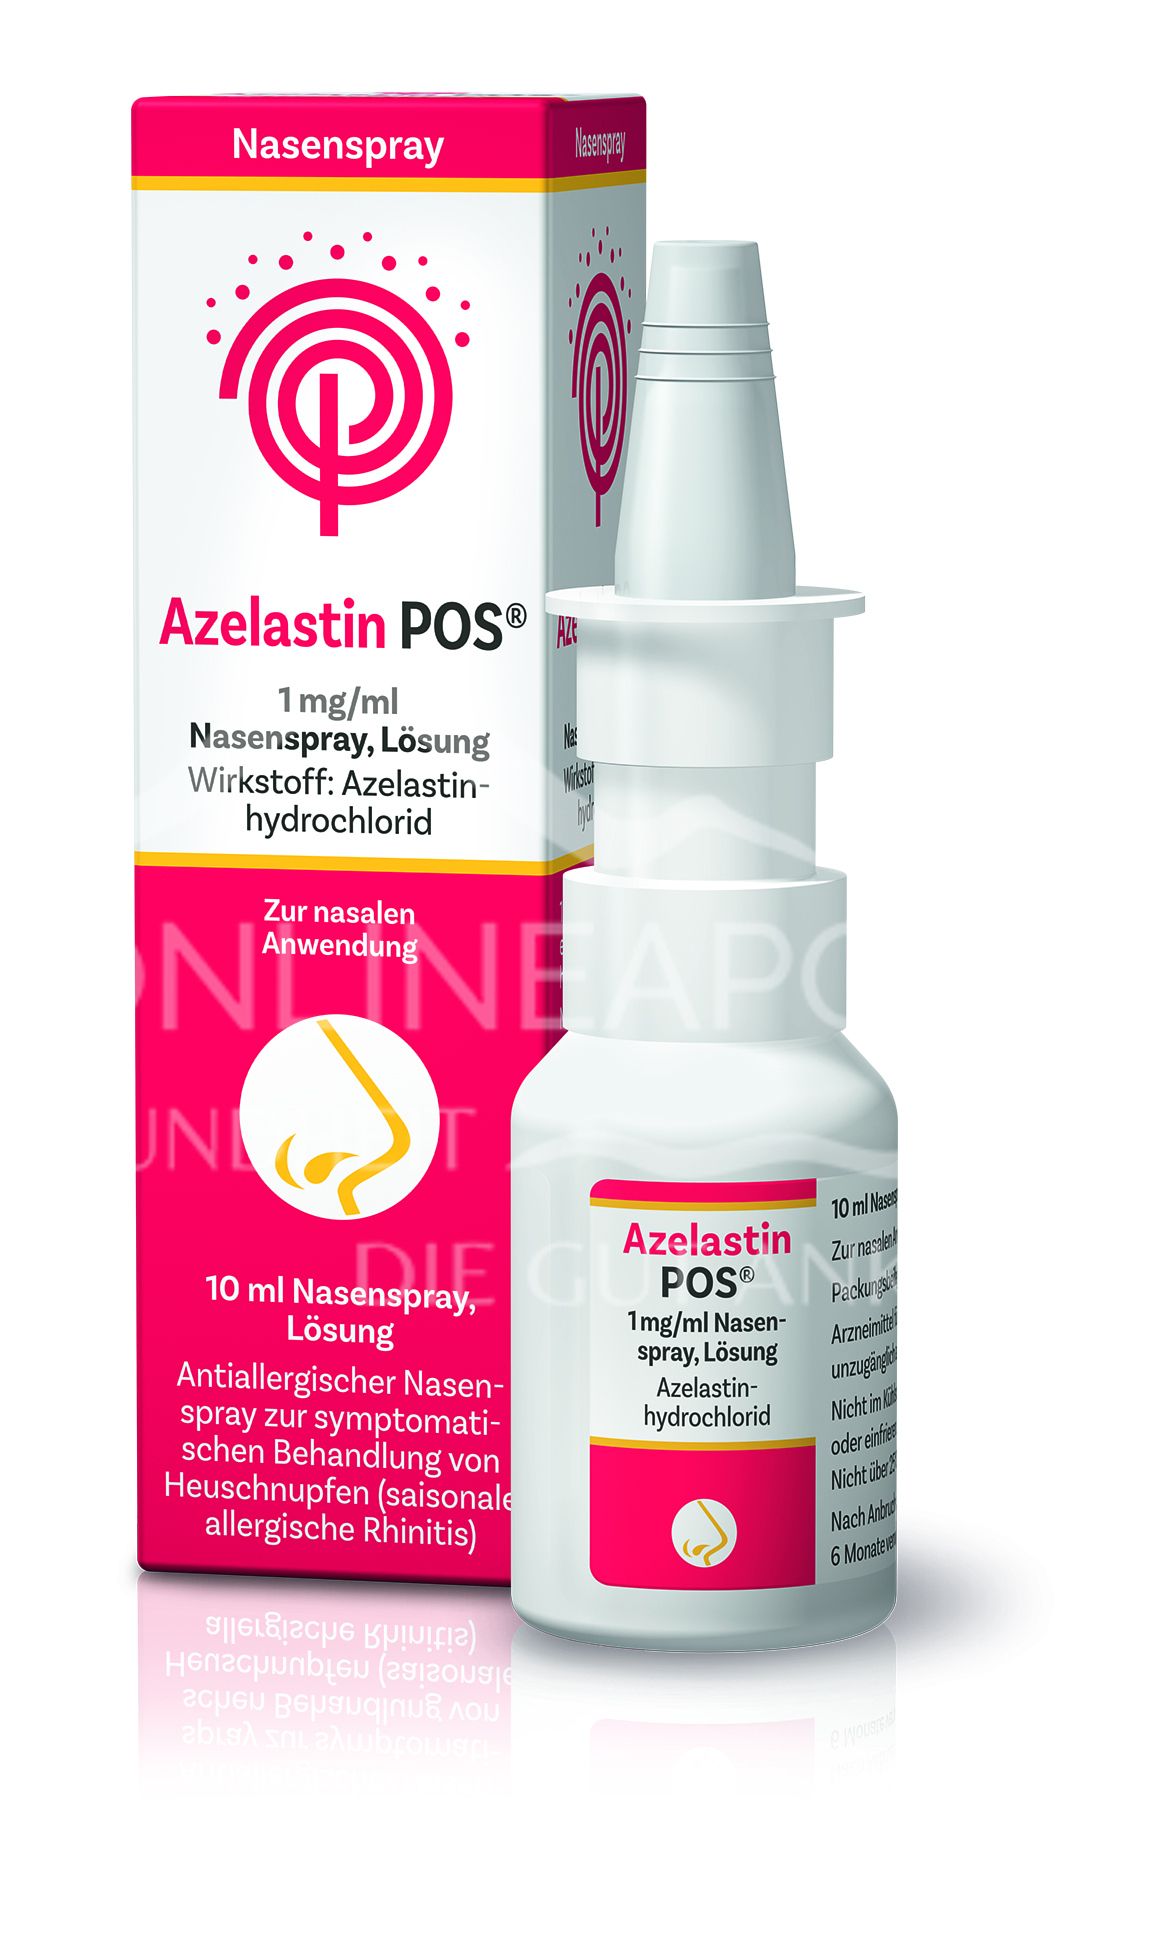 Azelastin-POS® 1mg/ ml Nasenspray, Lösung